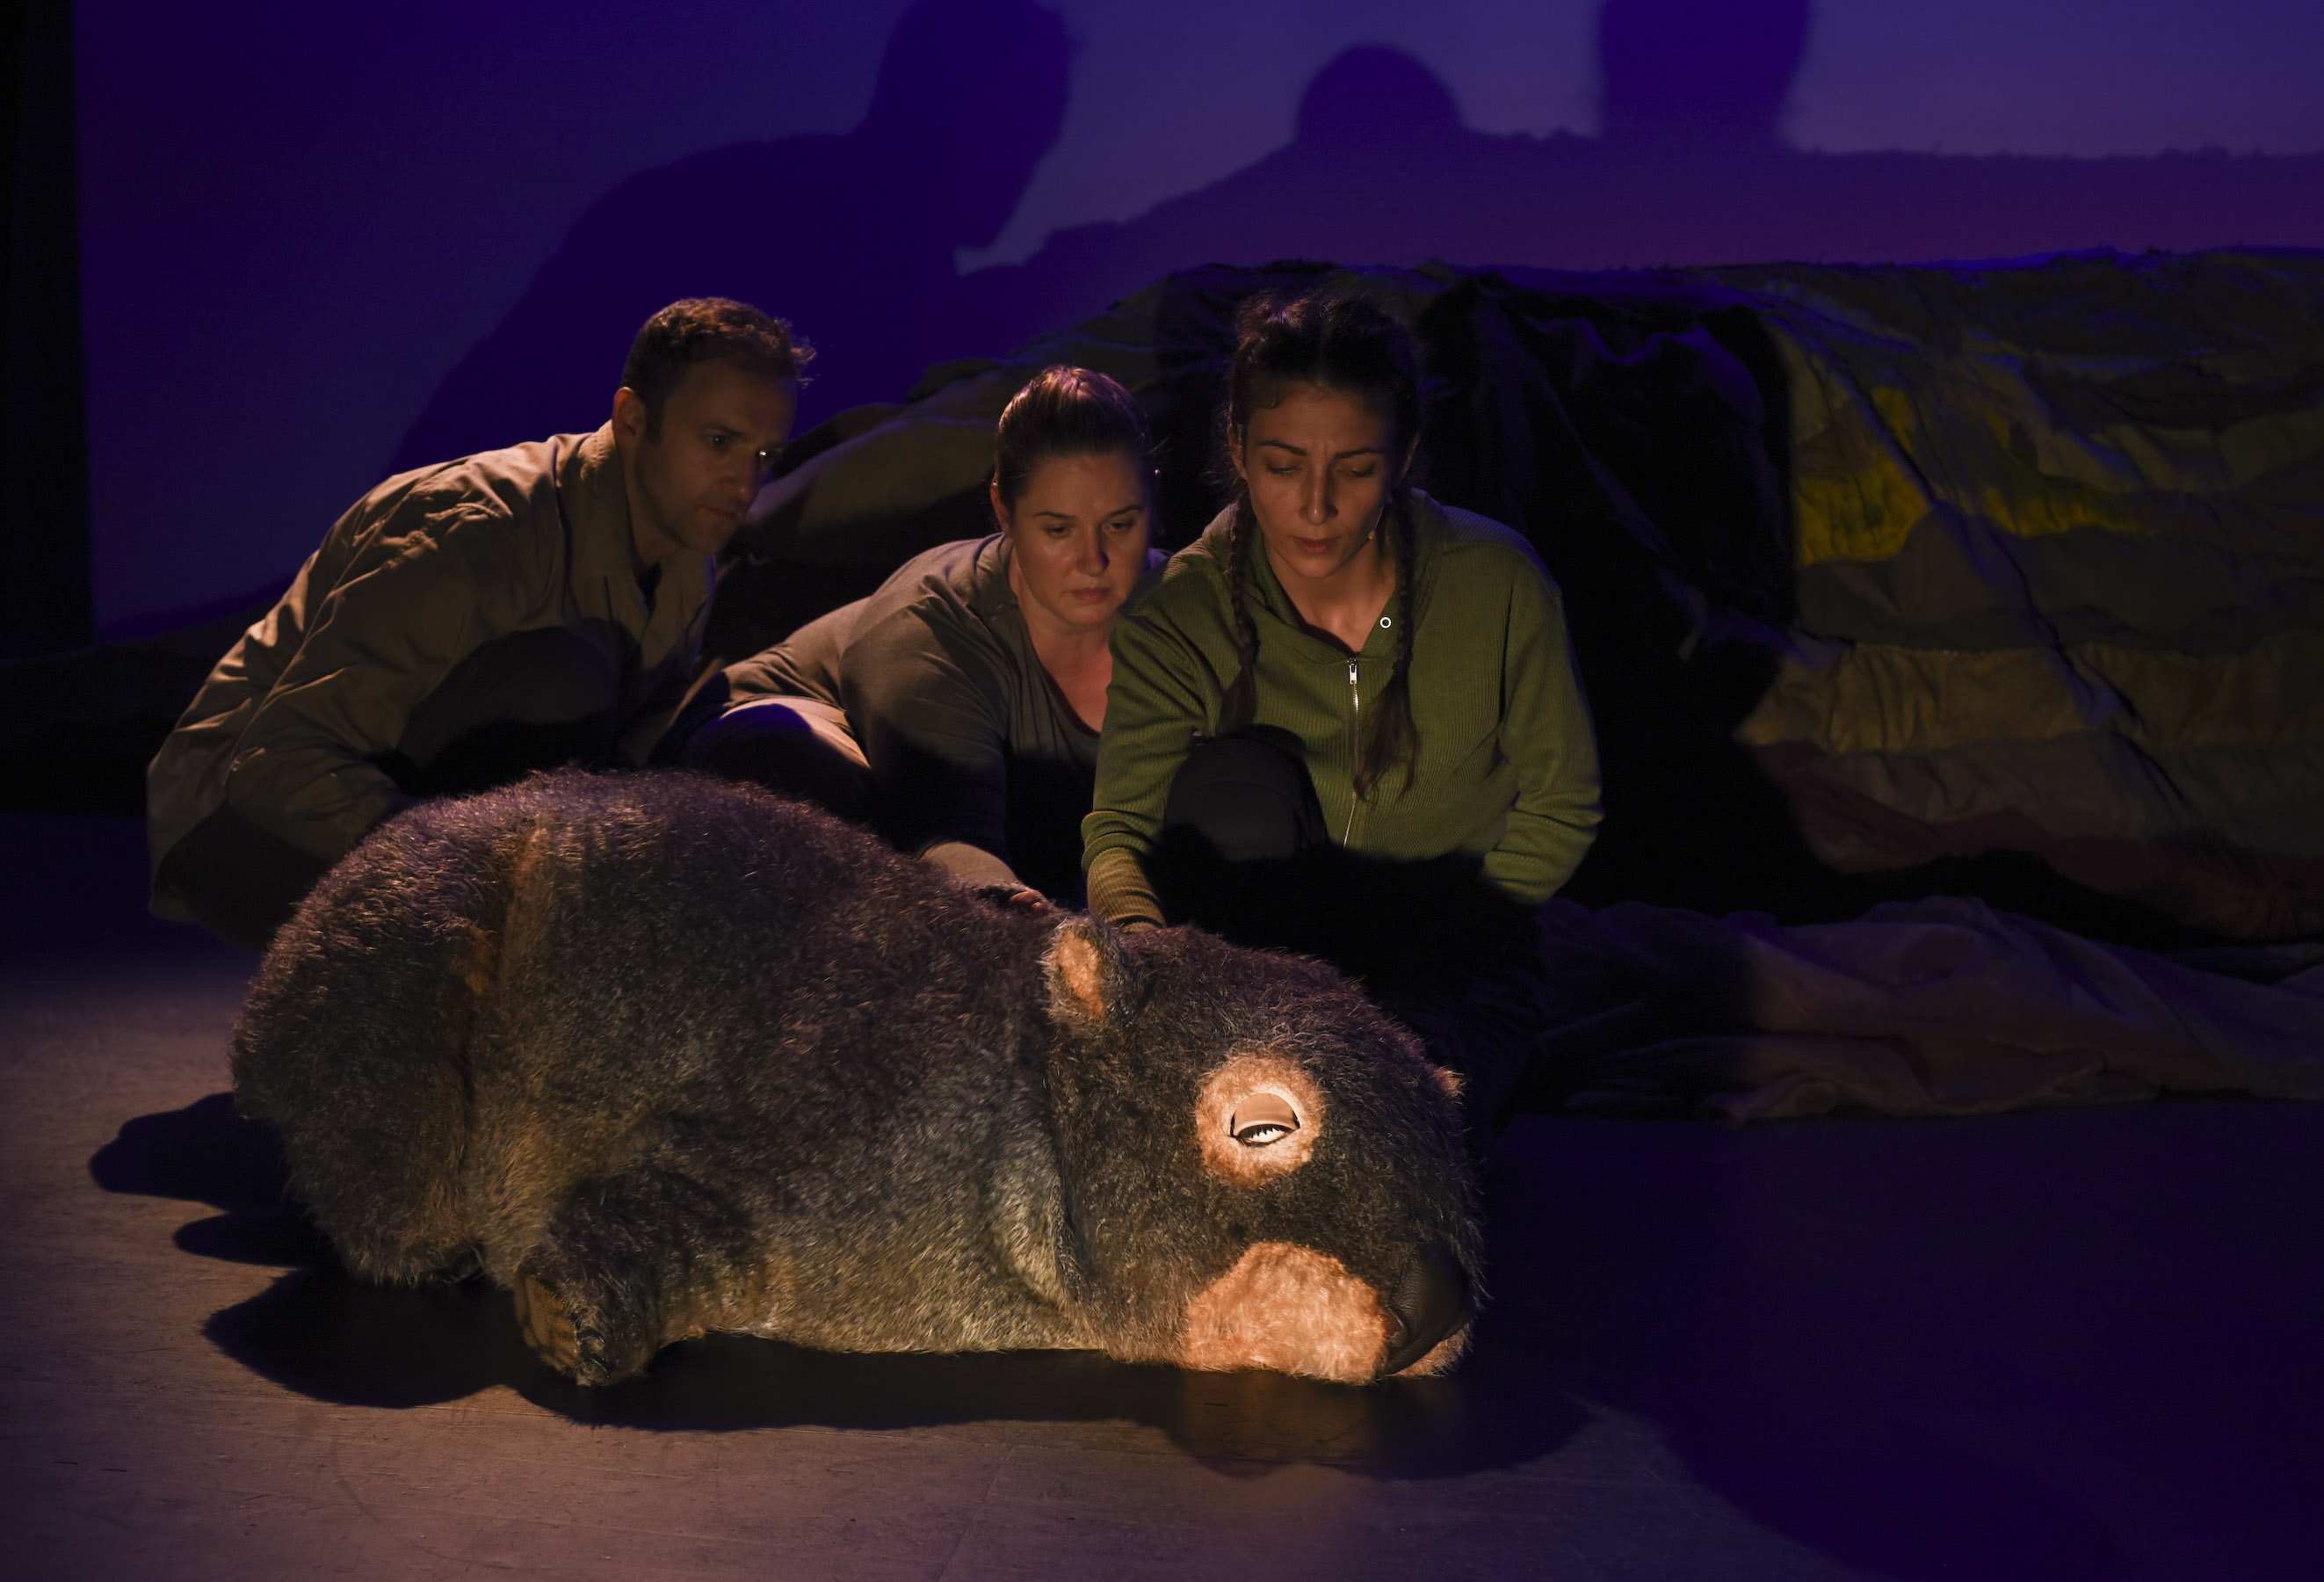 Diary of a Wombat by Monkey Baa Theatre Company, Sydney